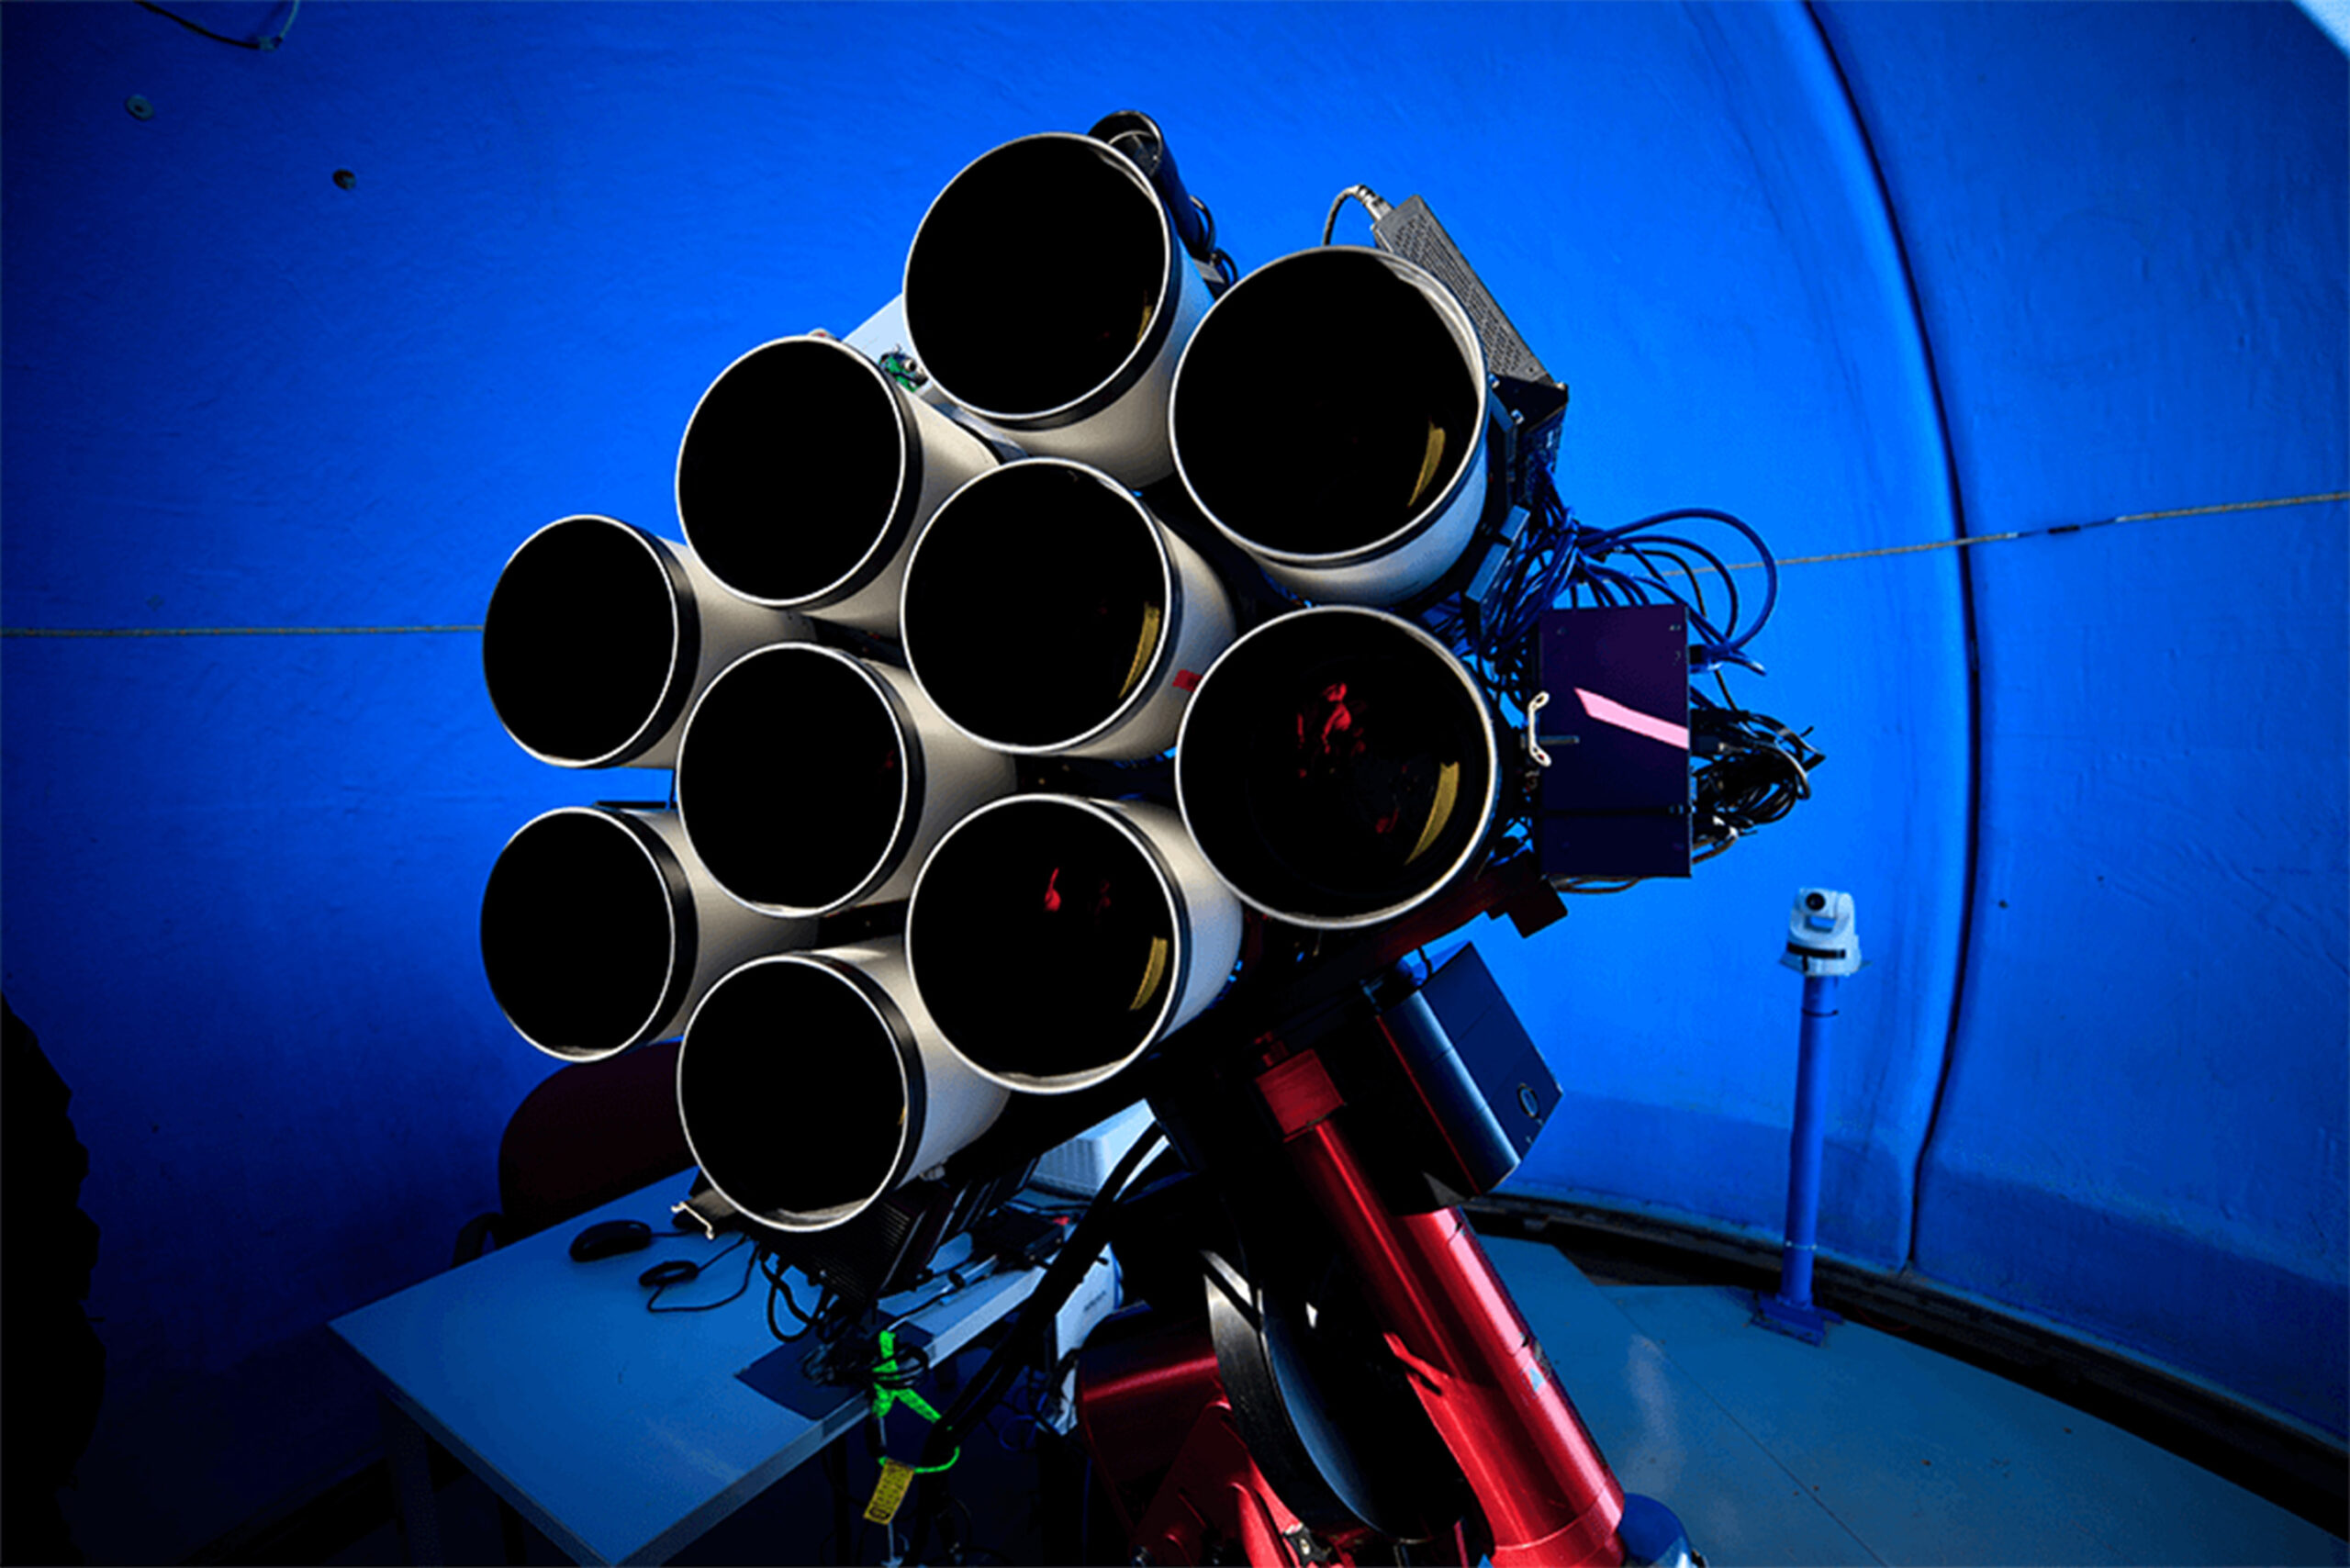 猎人望远镜包括10个佳能EF 400mm f/2.8 L IS II超长焦镜头